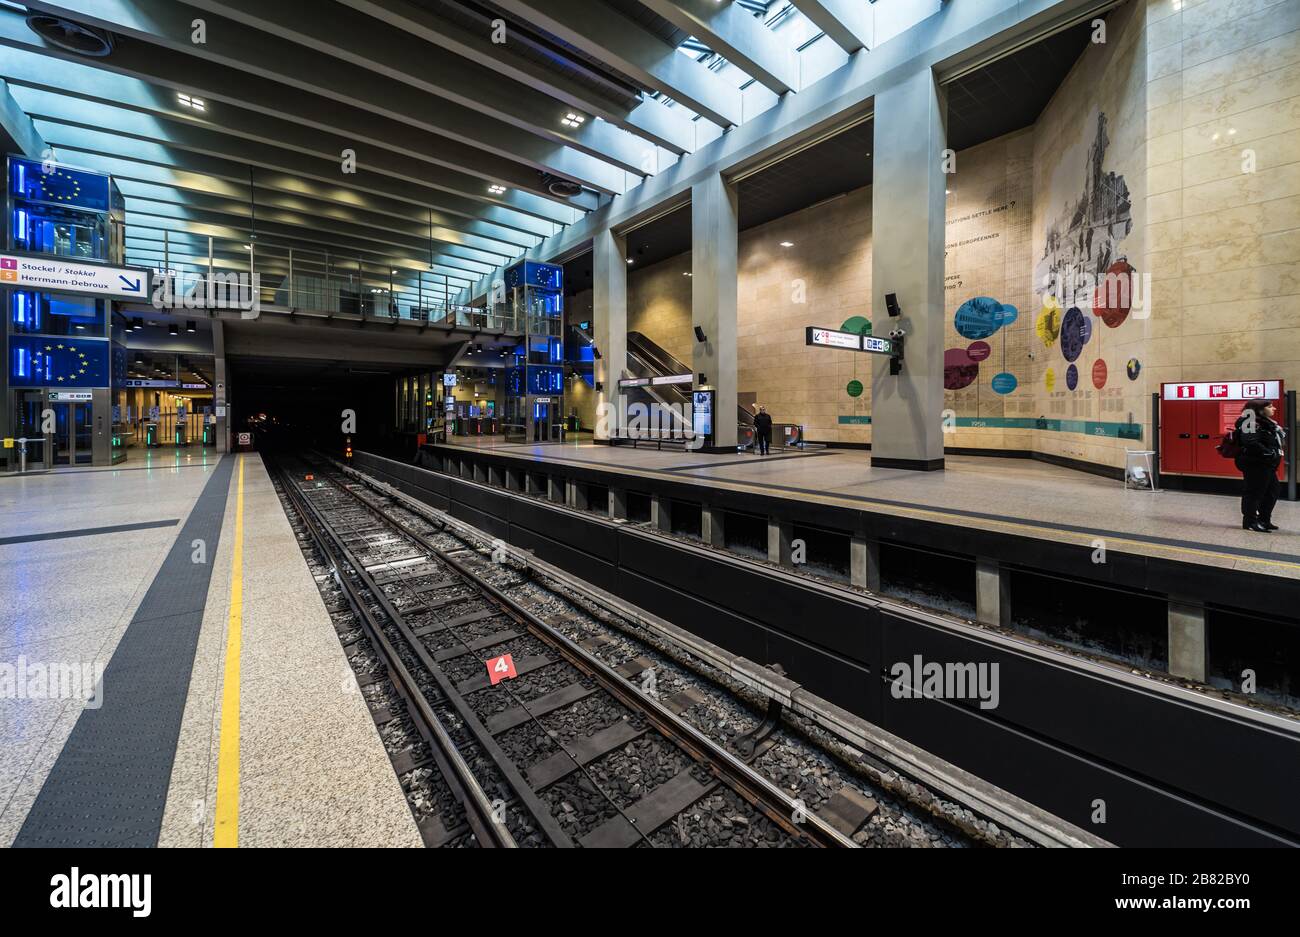 Bruxelles quartier européen, région de Bruxelles-capitale / Belgique - 02 17 2020: Design intérieur du métro et du tra Robert Schuman contemporains rénovés Banque D'Images